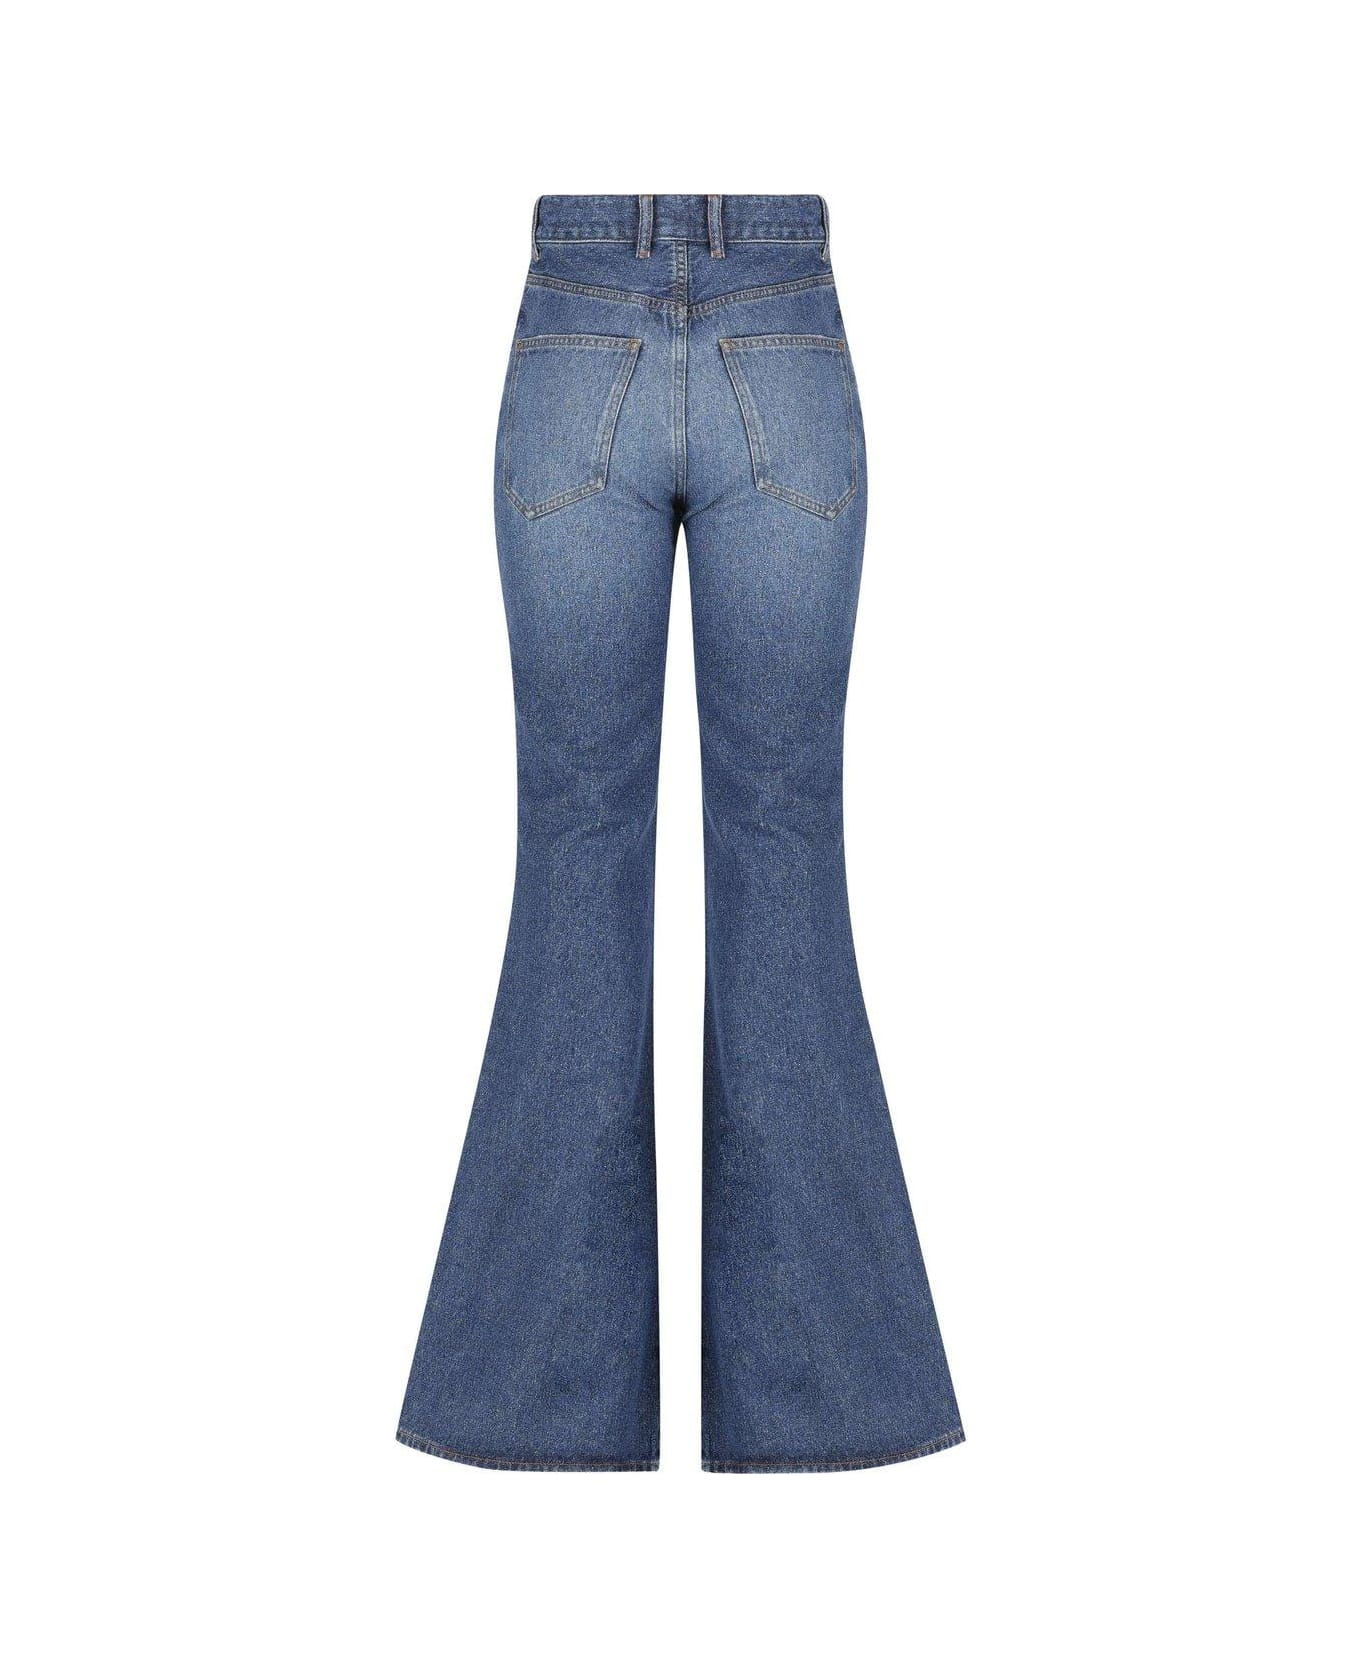 Chloé Flared Jeans - Dusky blue